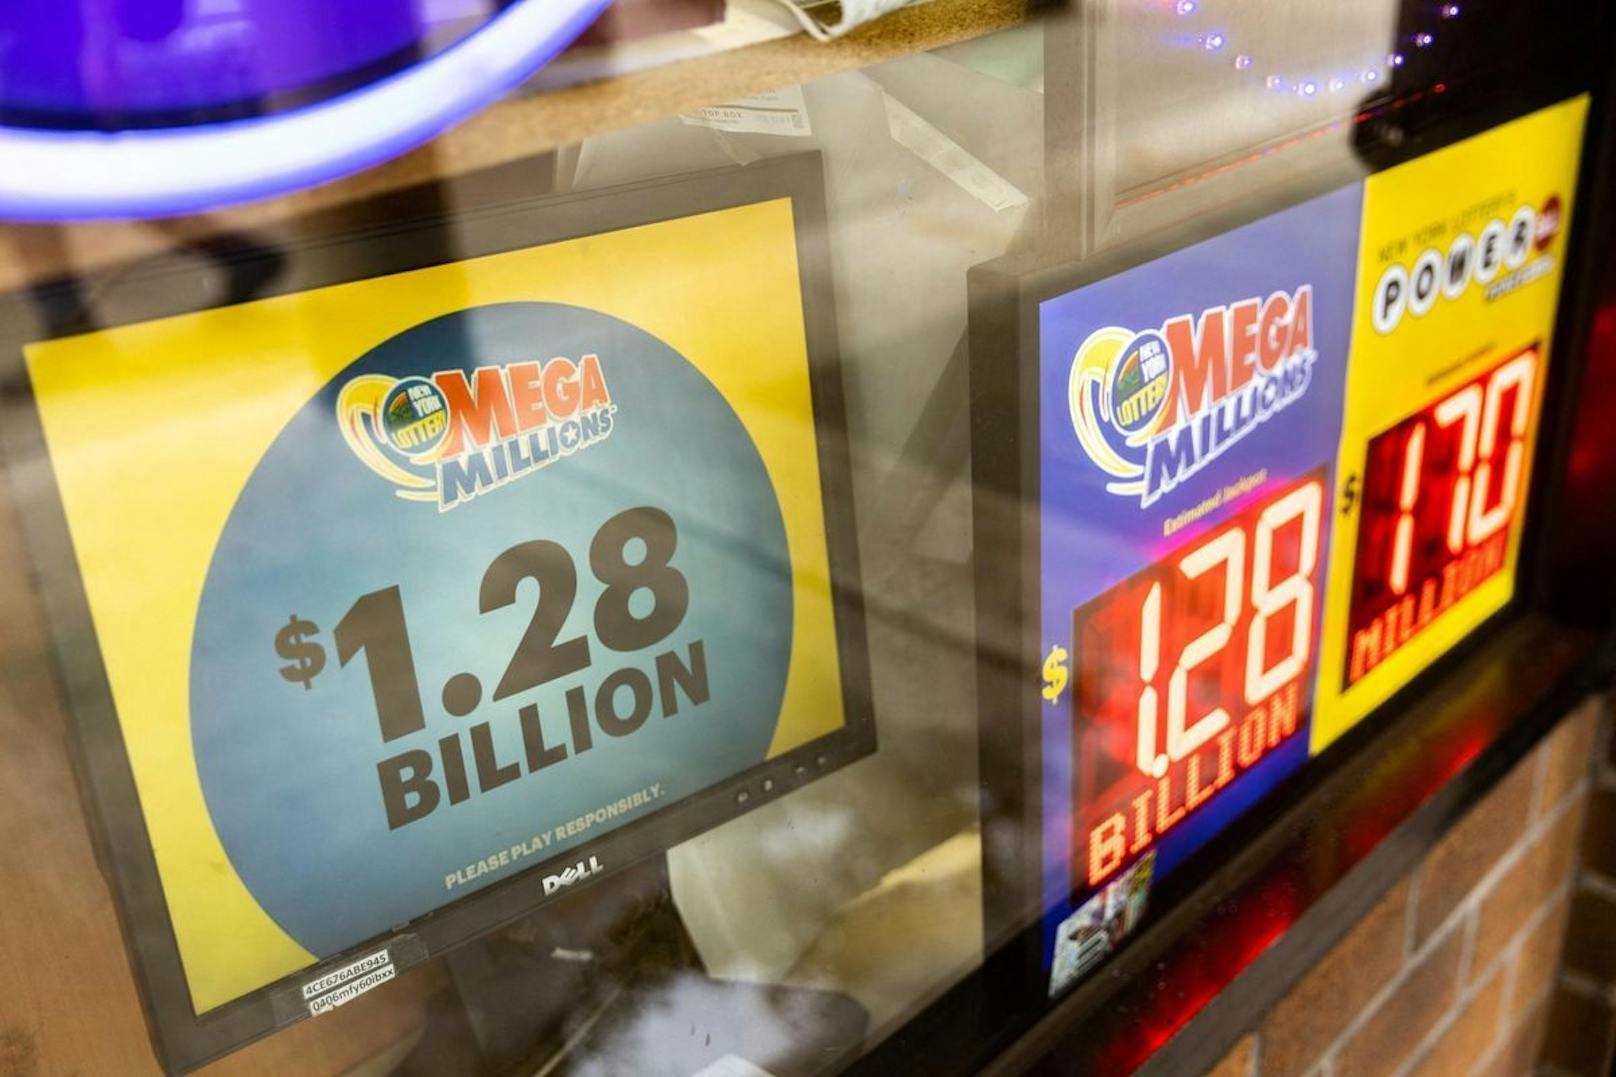 Am Freitag konnte man in der US-Lotterie Mega Millions über eine Milliarde Dollar gewinnen.